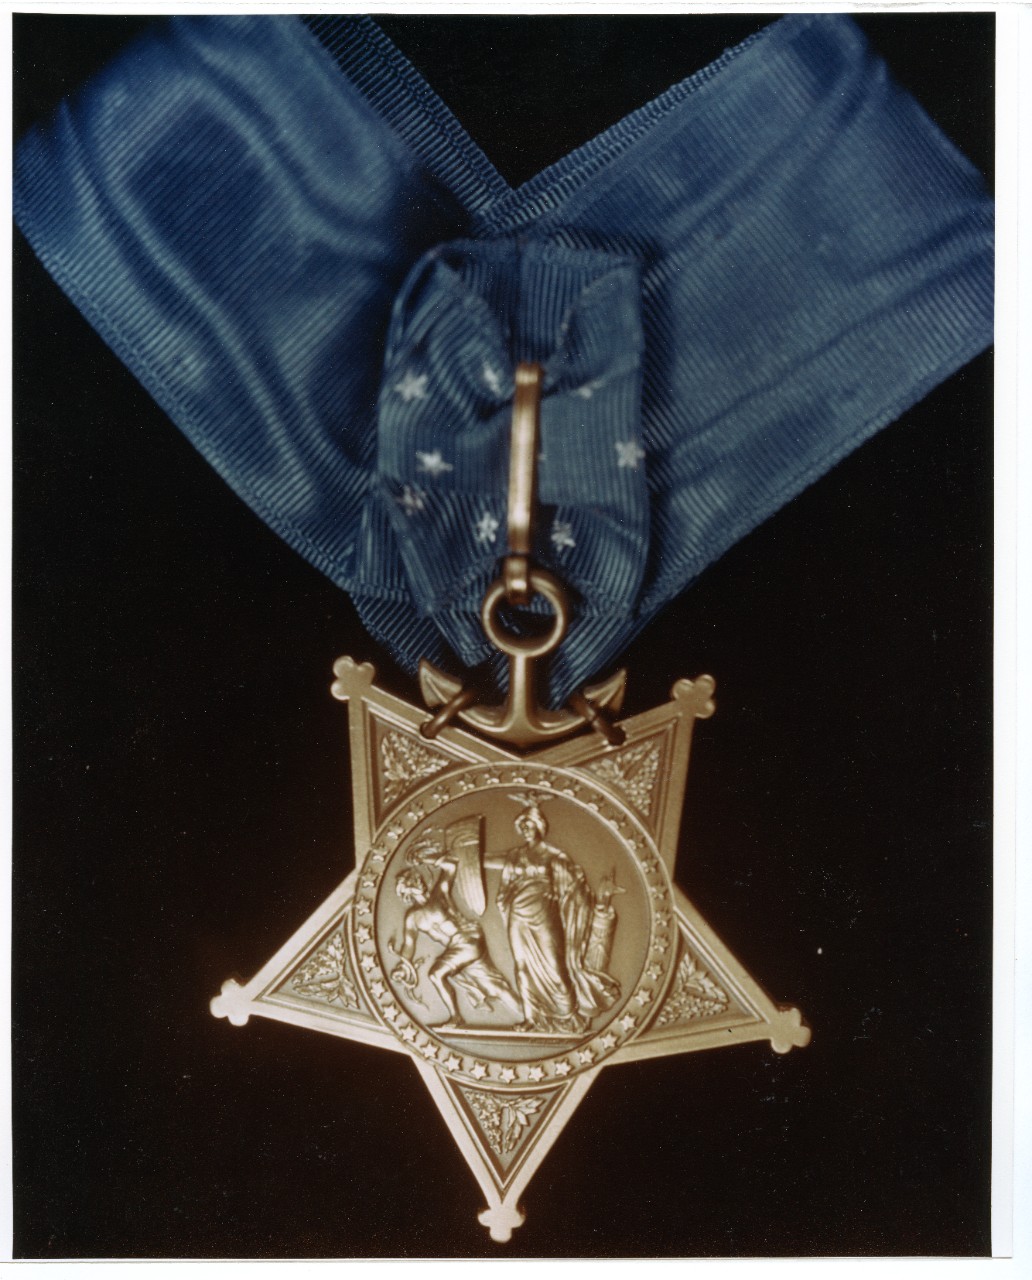 Photo #: 80-G-K-13586 U.S. Navy Medal of Honor